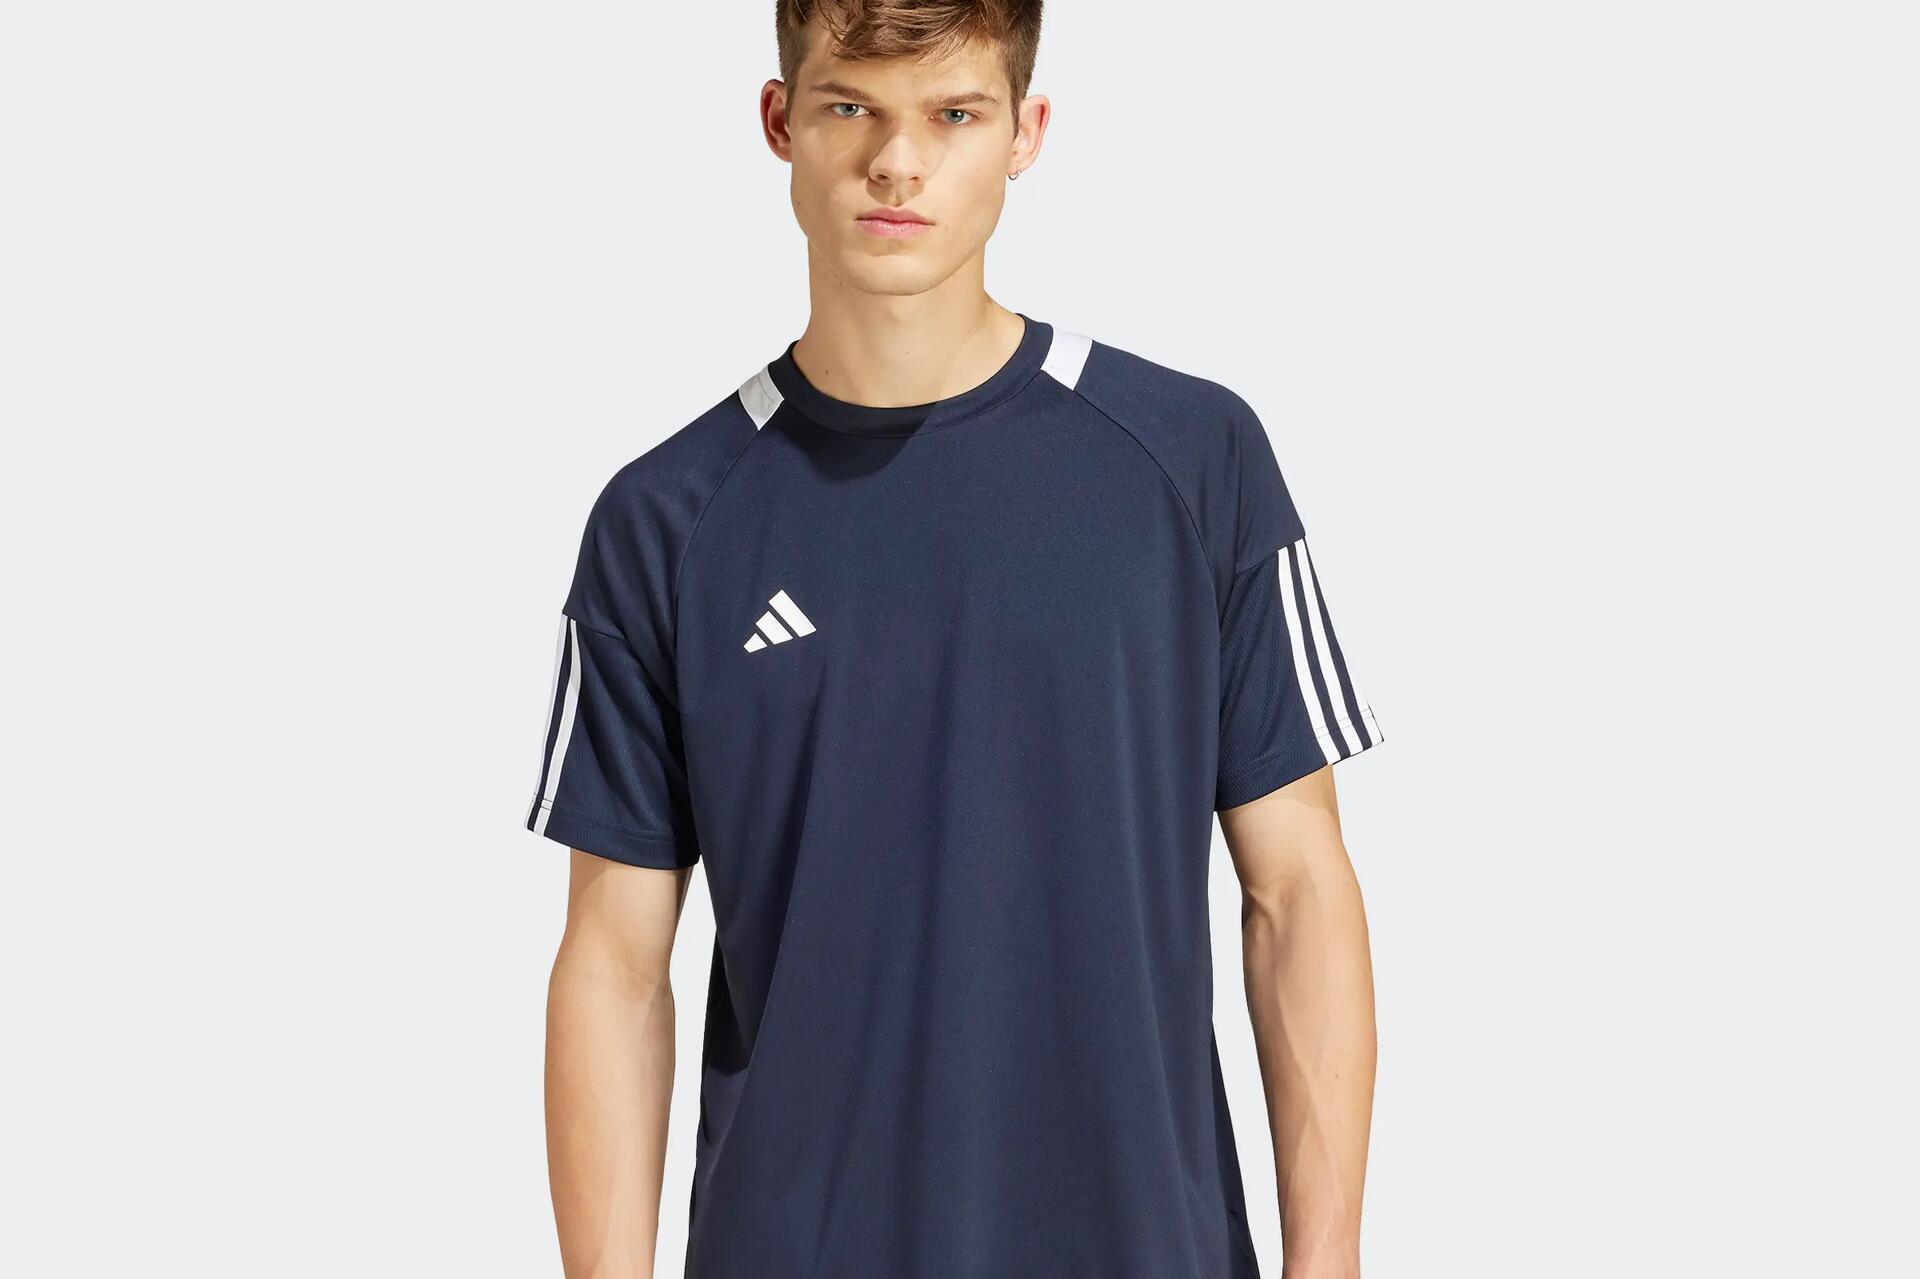 De beste Adidas voetbalshirts voor spelers, clubs en fans